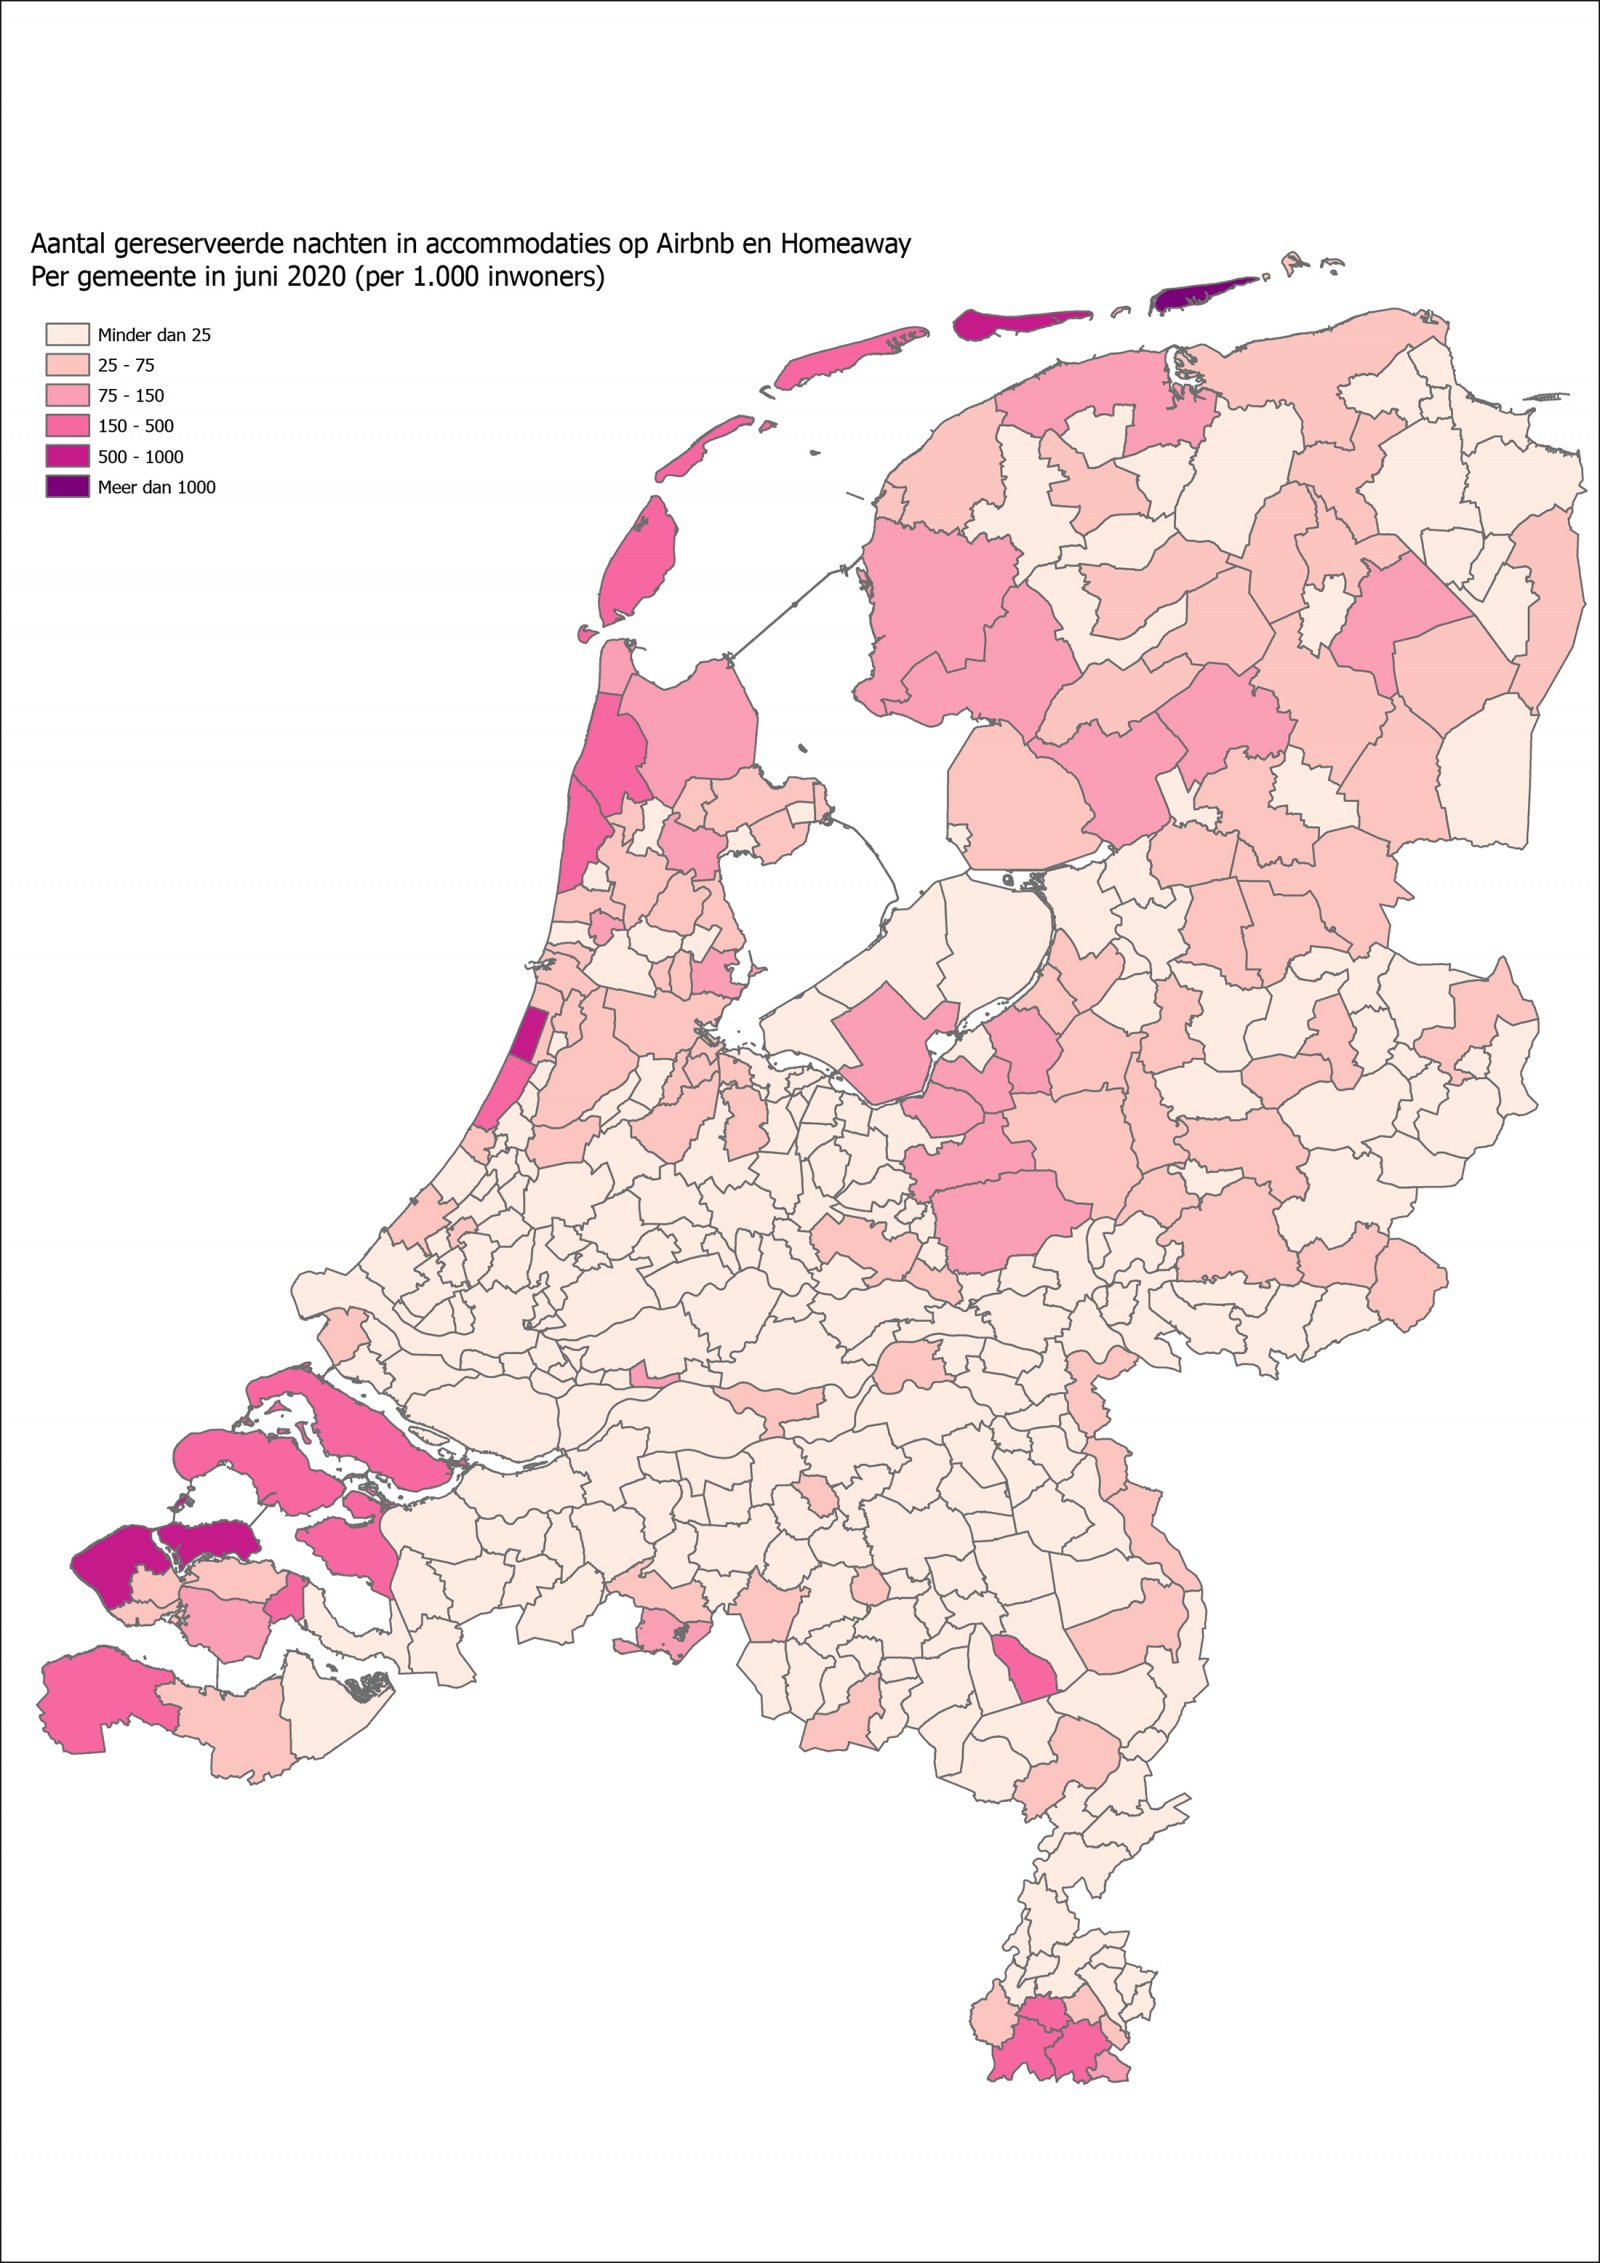 Kaart van Nederland met aantal gereserveerde nachten per 1000 inwoners per gemeente in juni 2020 